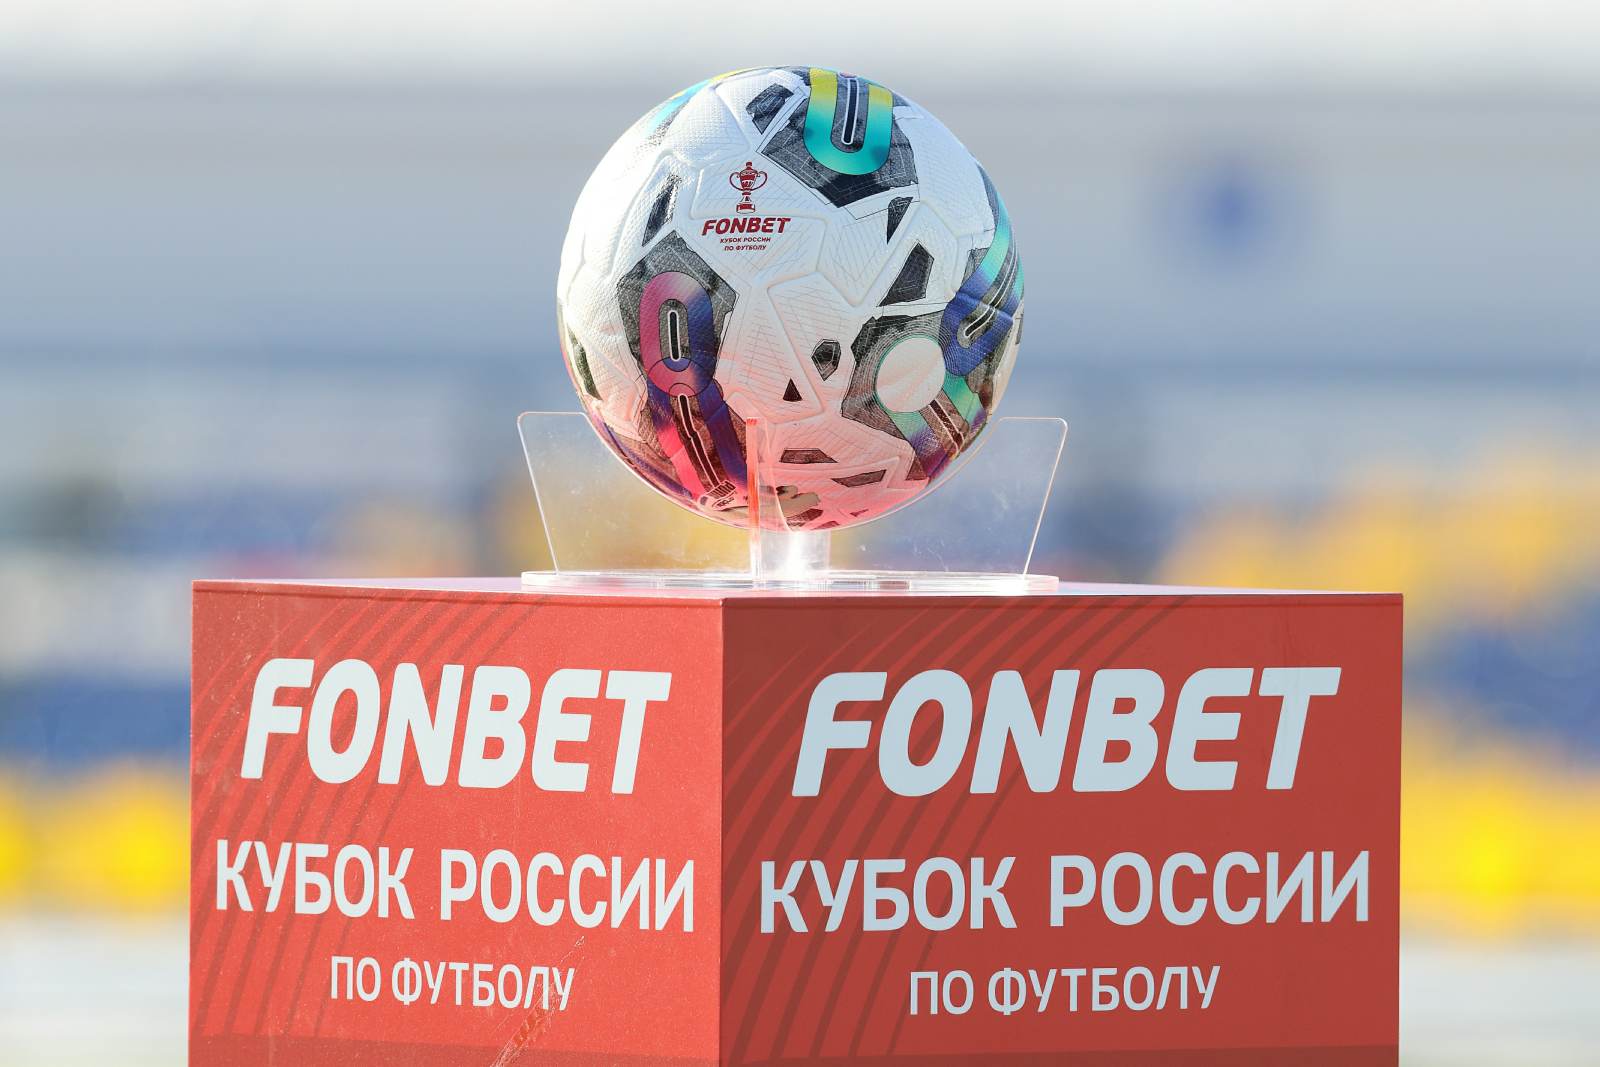 Игрок 2DROTS Ослоновский назвал цели на Кубок России